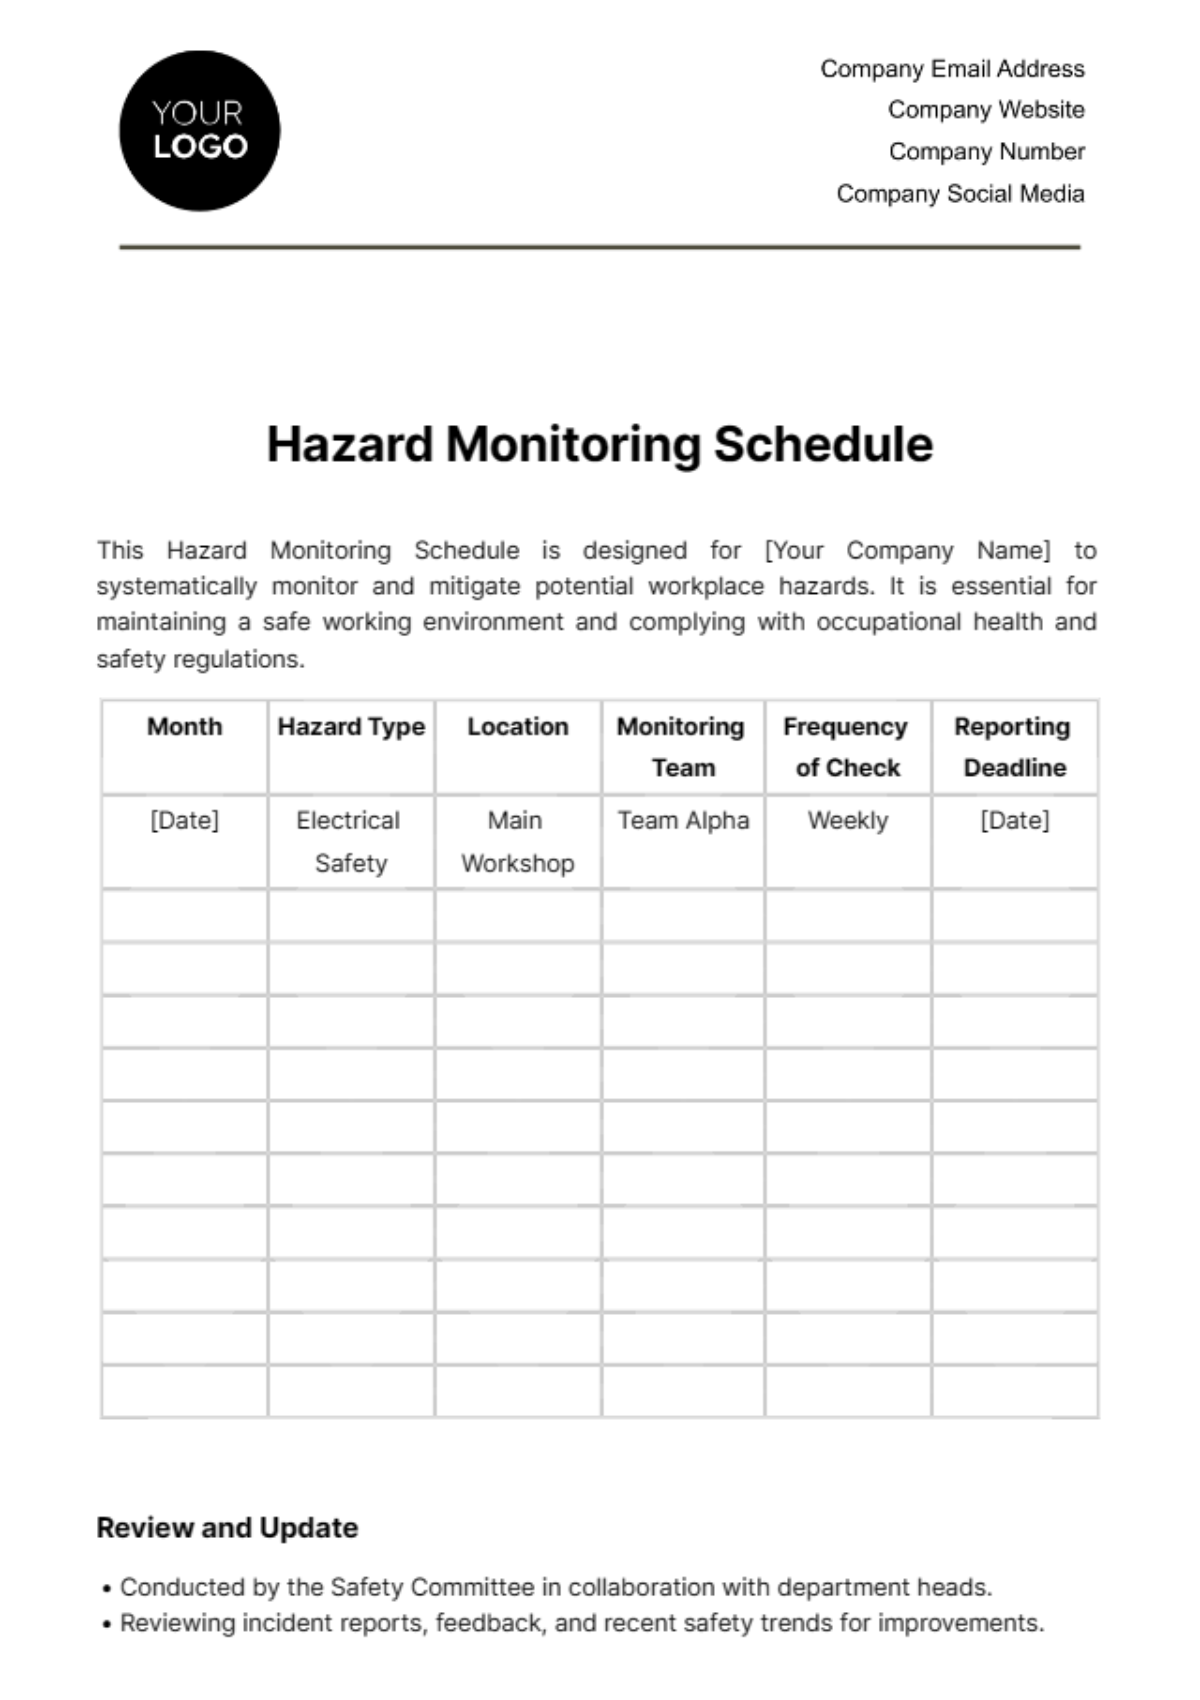 Hazard Monitoring Schedule Template